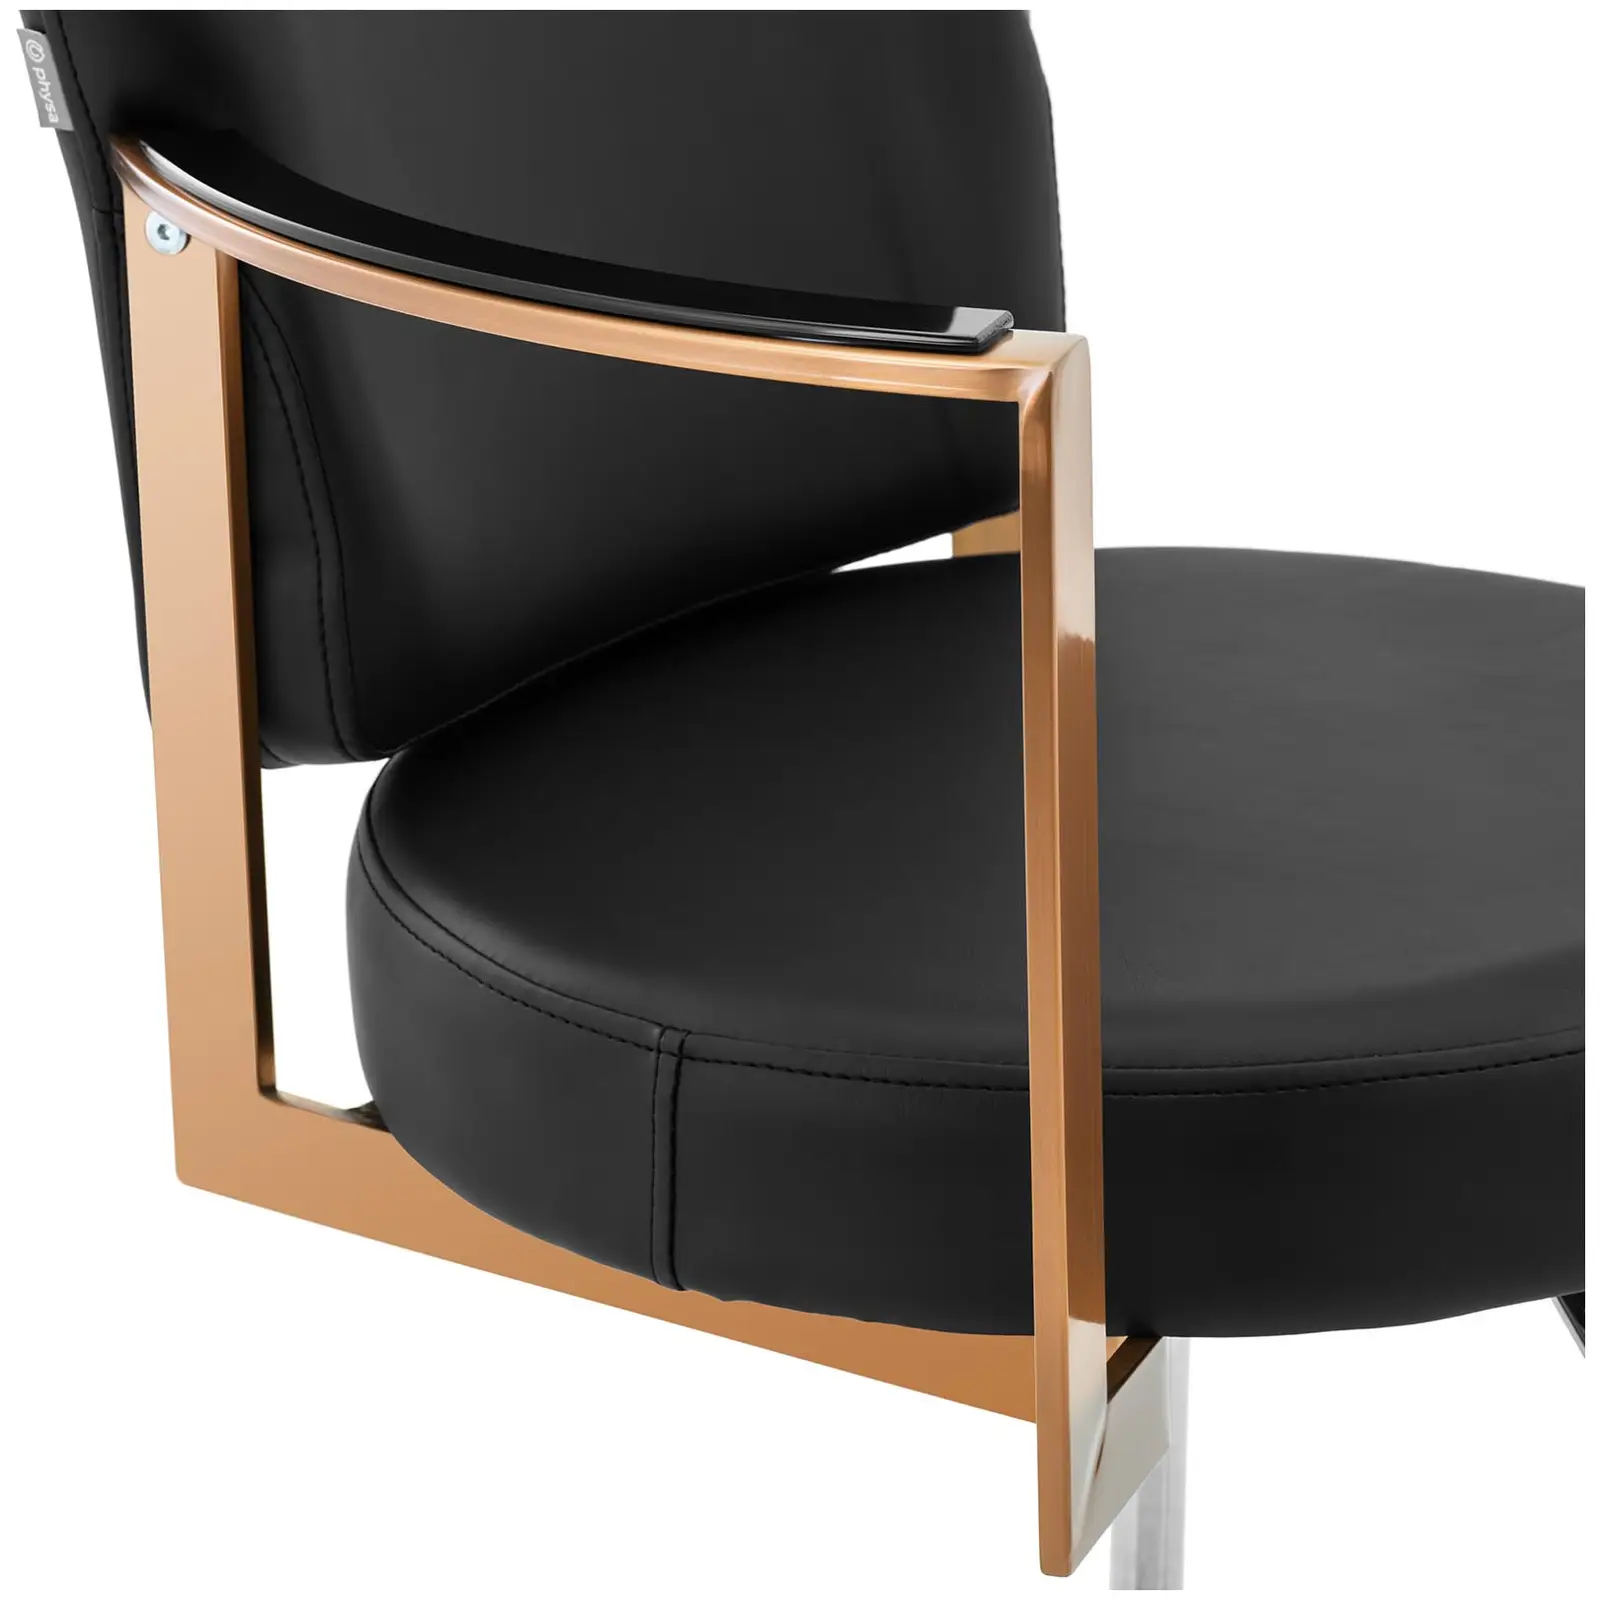 Fotel fryzjerski z podnóżkiem - 900 - 1050 mm - 200 kg - różowe złoto, czarny